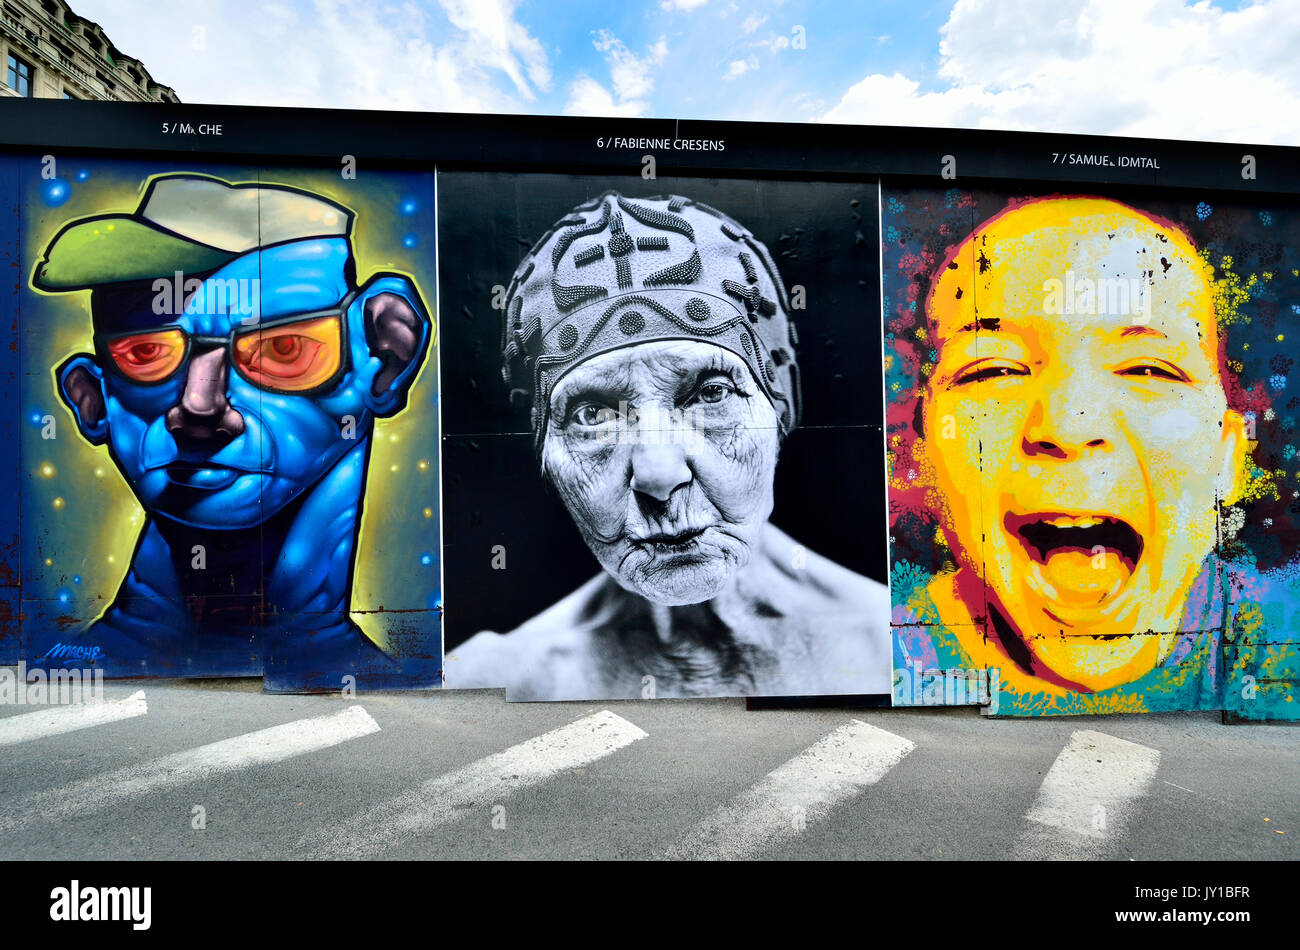 Bruxelles, Belgio. Arte di strada in Rue Ravenstein - " interfacce ": 40 ritratti da 40 artisti sulle pareti temporaneo intorno opere edili. Iniziativa di ... Foto Stock